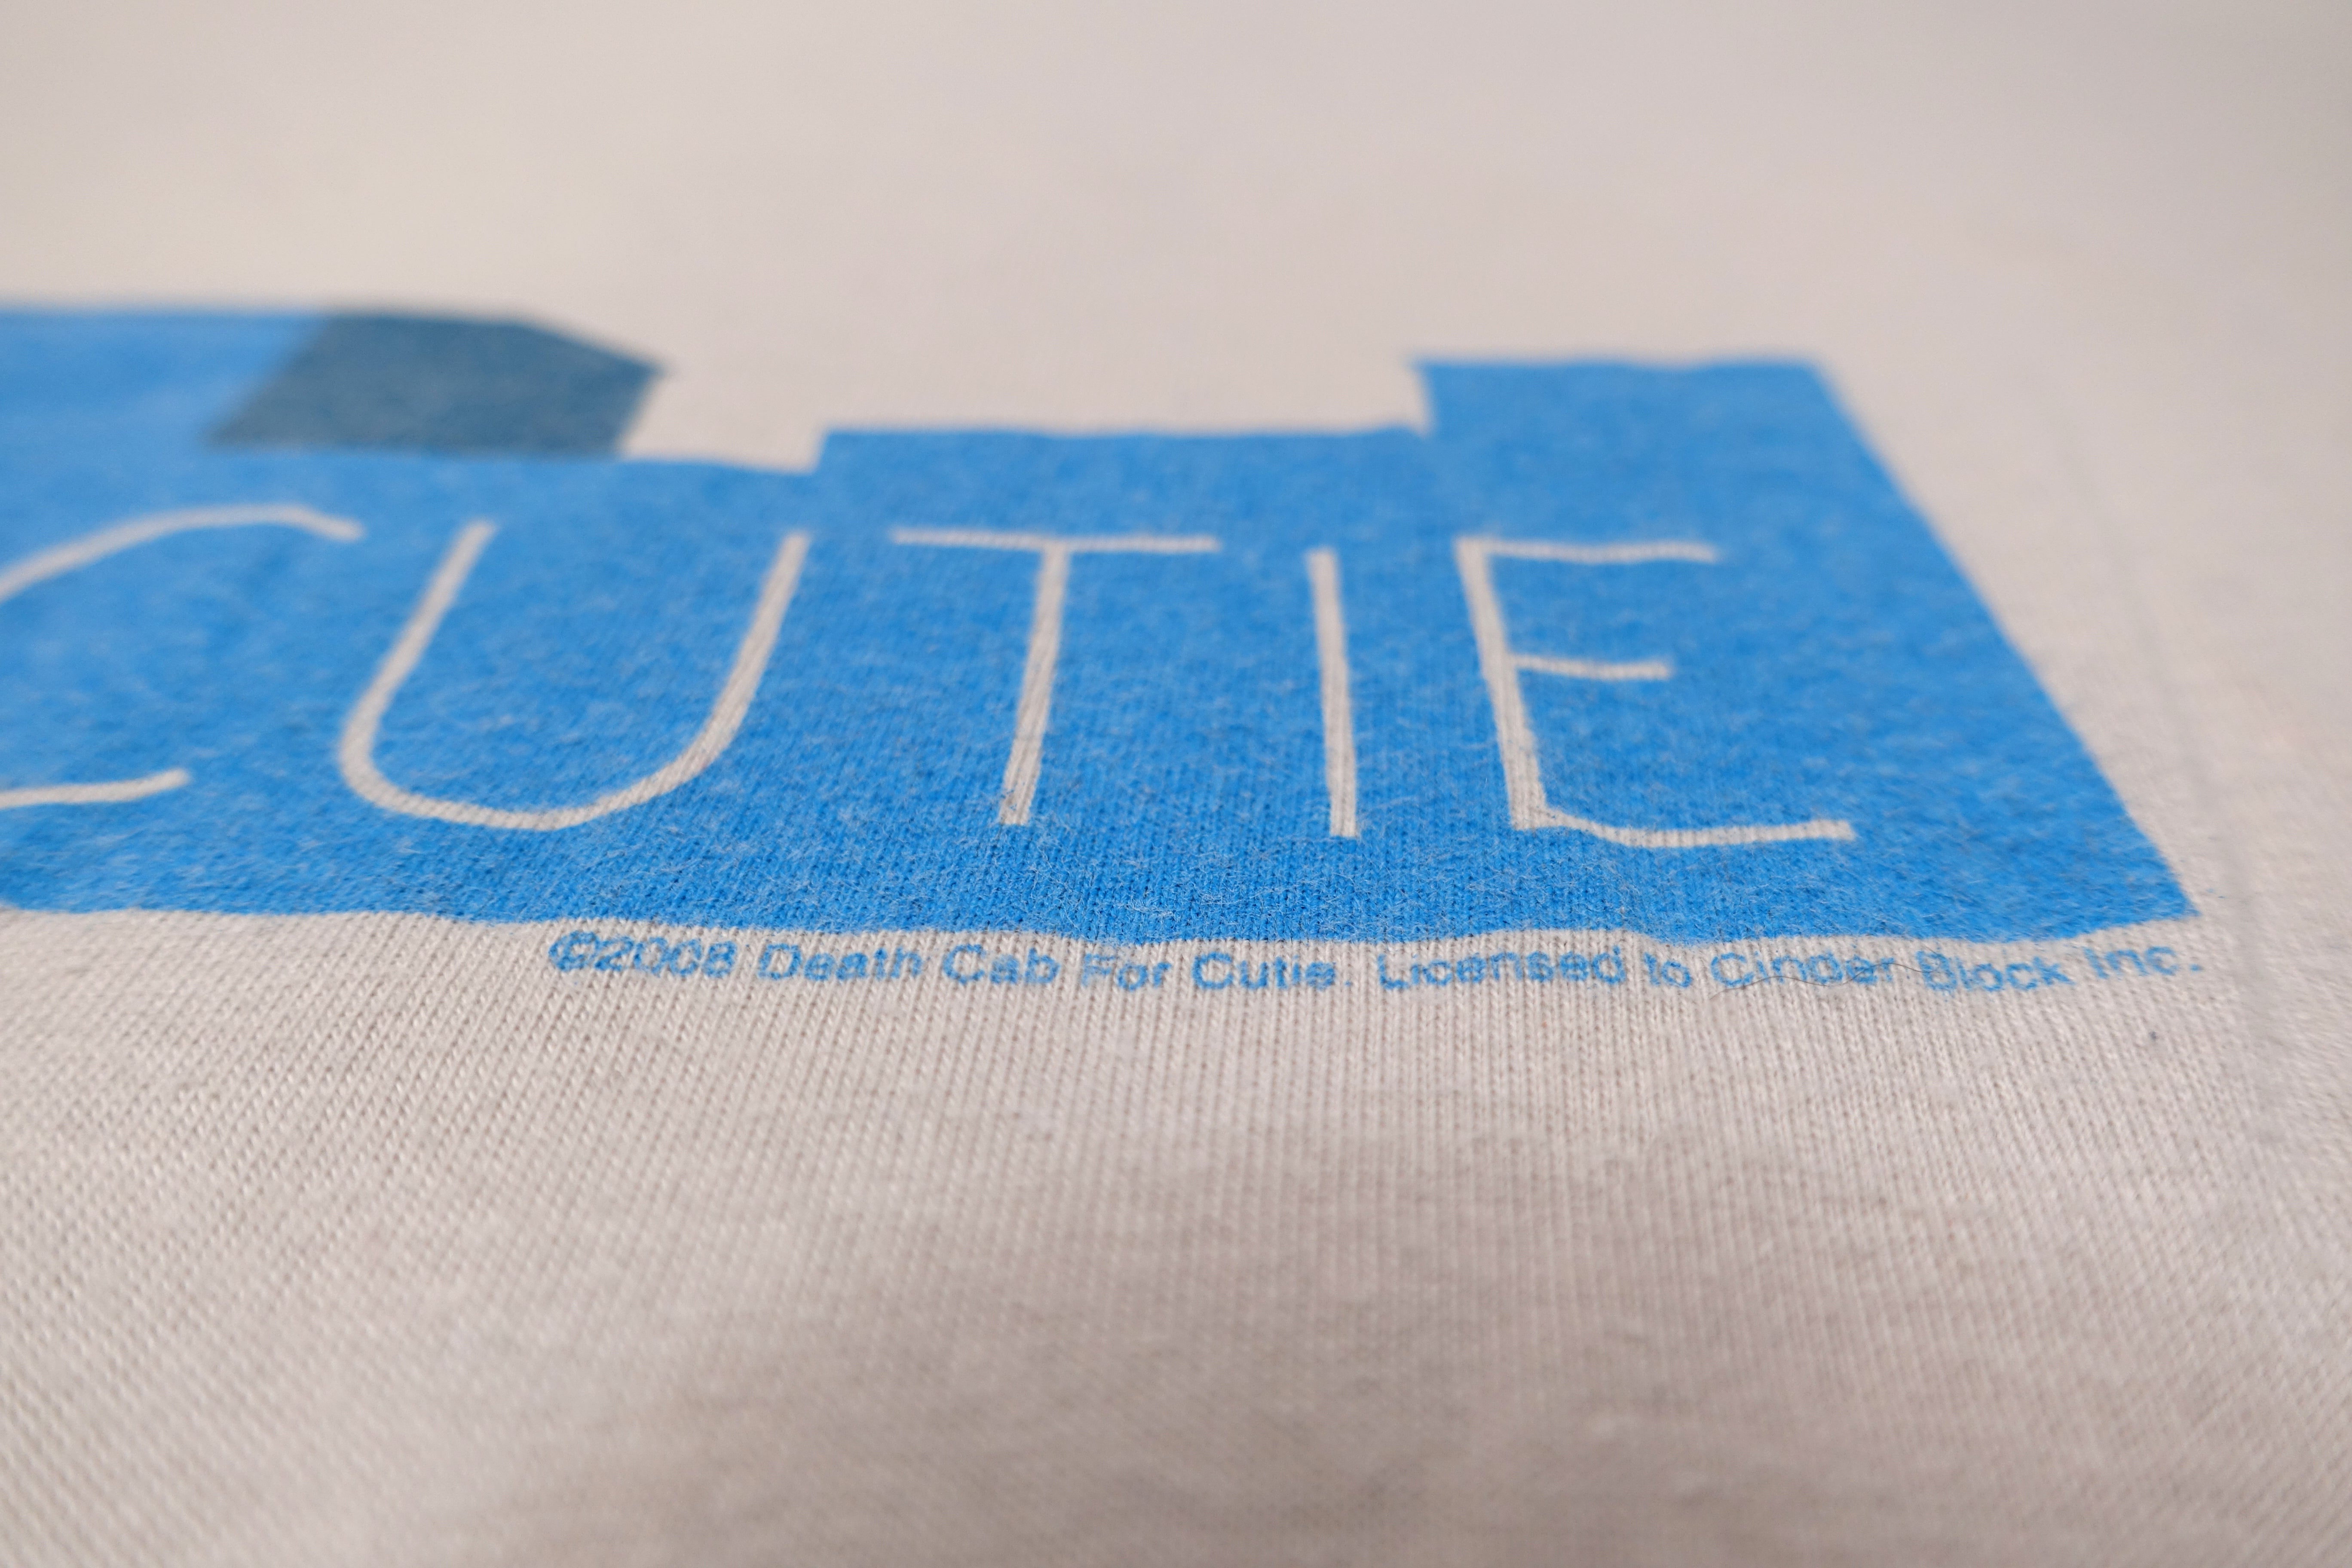 Death Cab For Cutie ‎– Industrial Complex 00's Tour Shirt Size XL